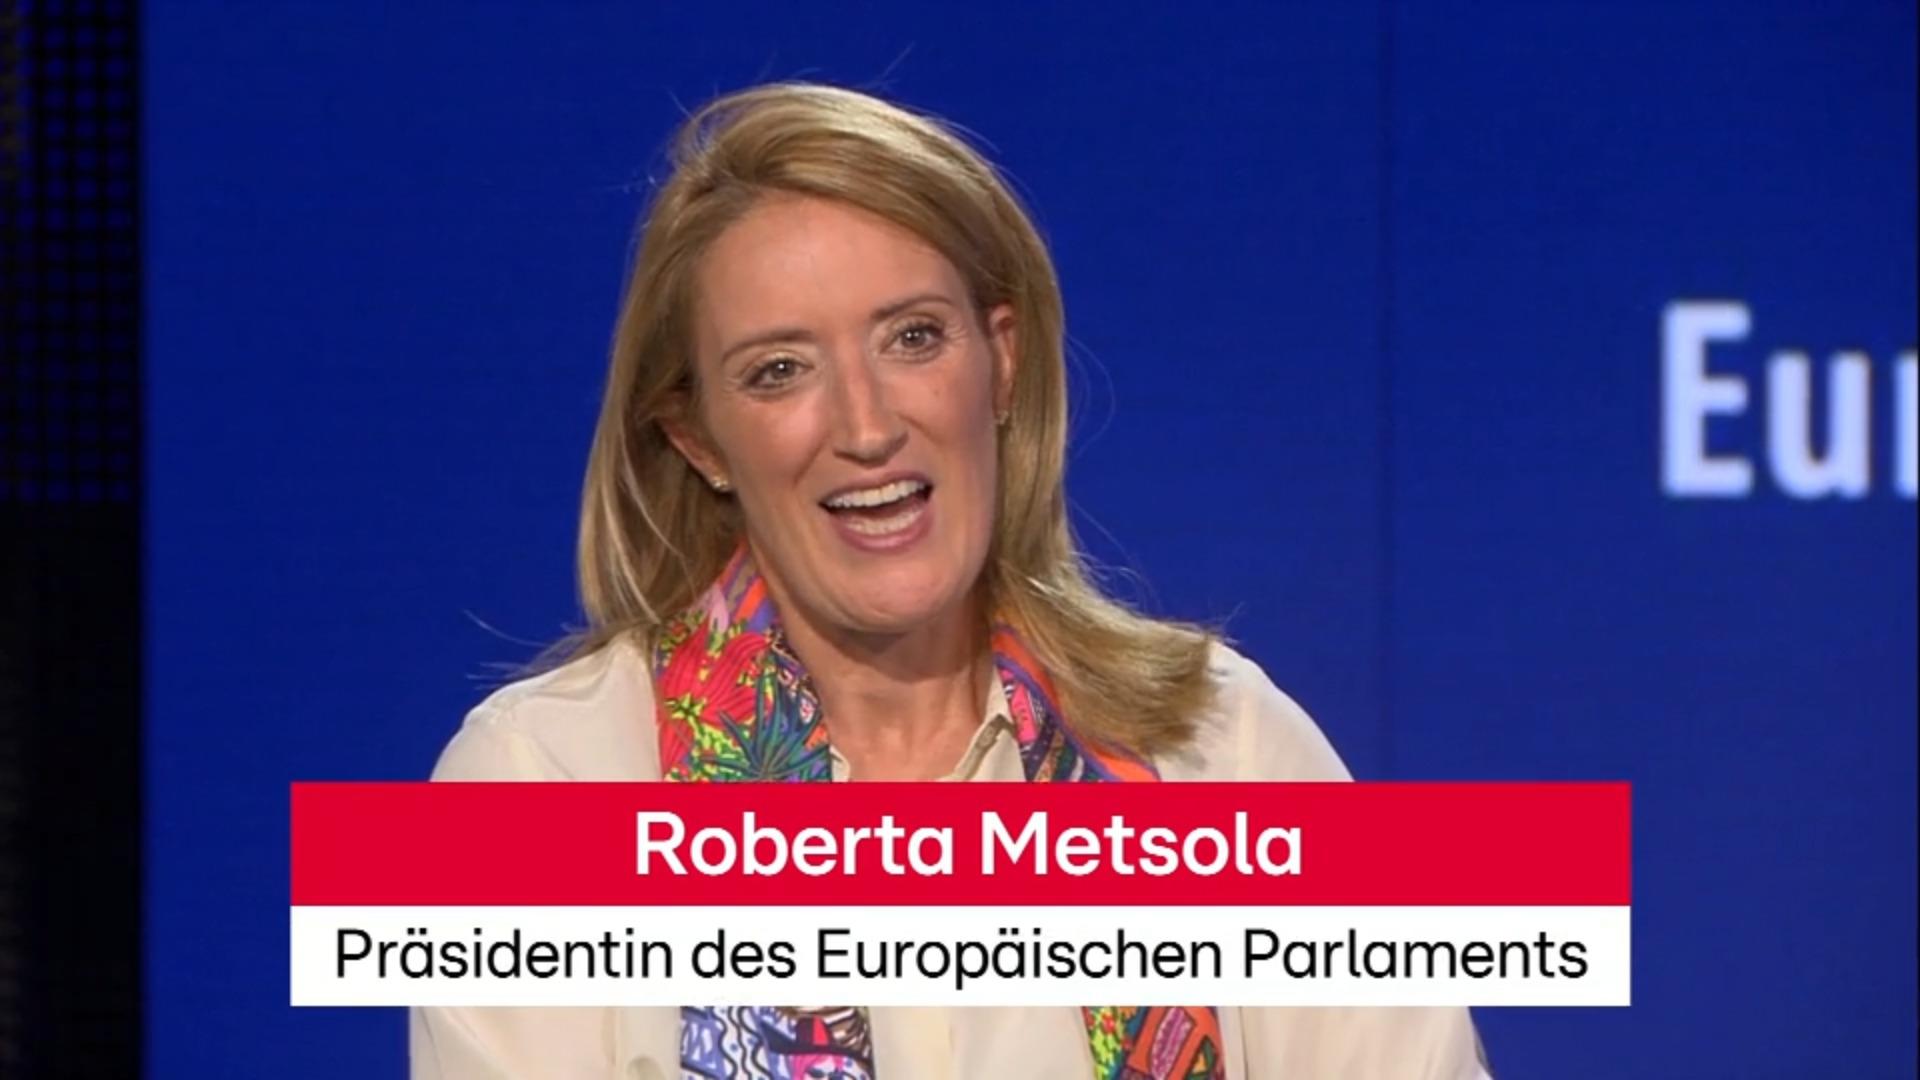 "Letzte Generation von Politikern, die etwas tun können" Interview mit Roberta Metsola